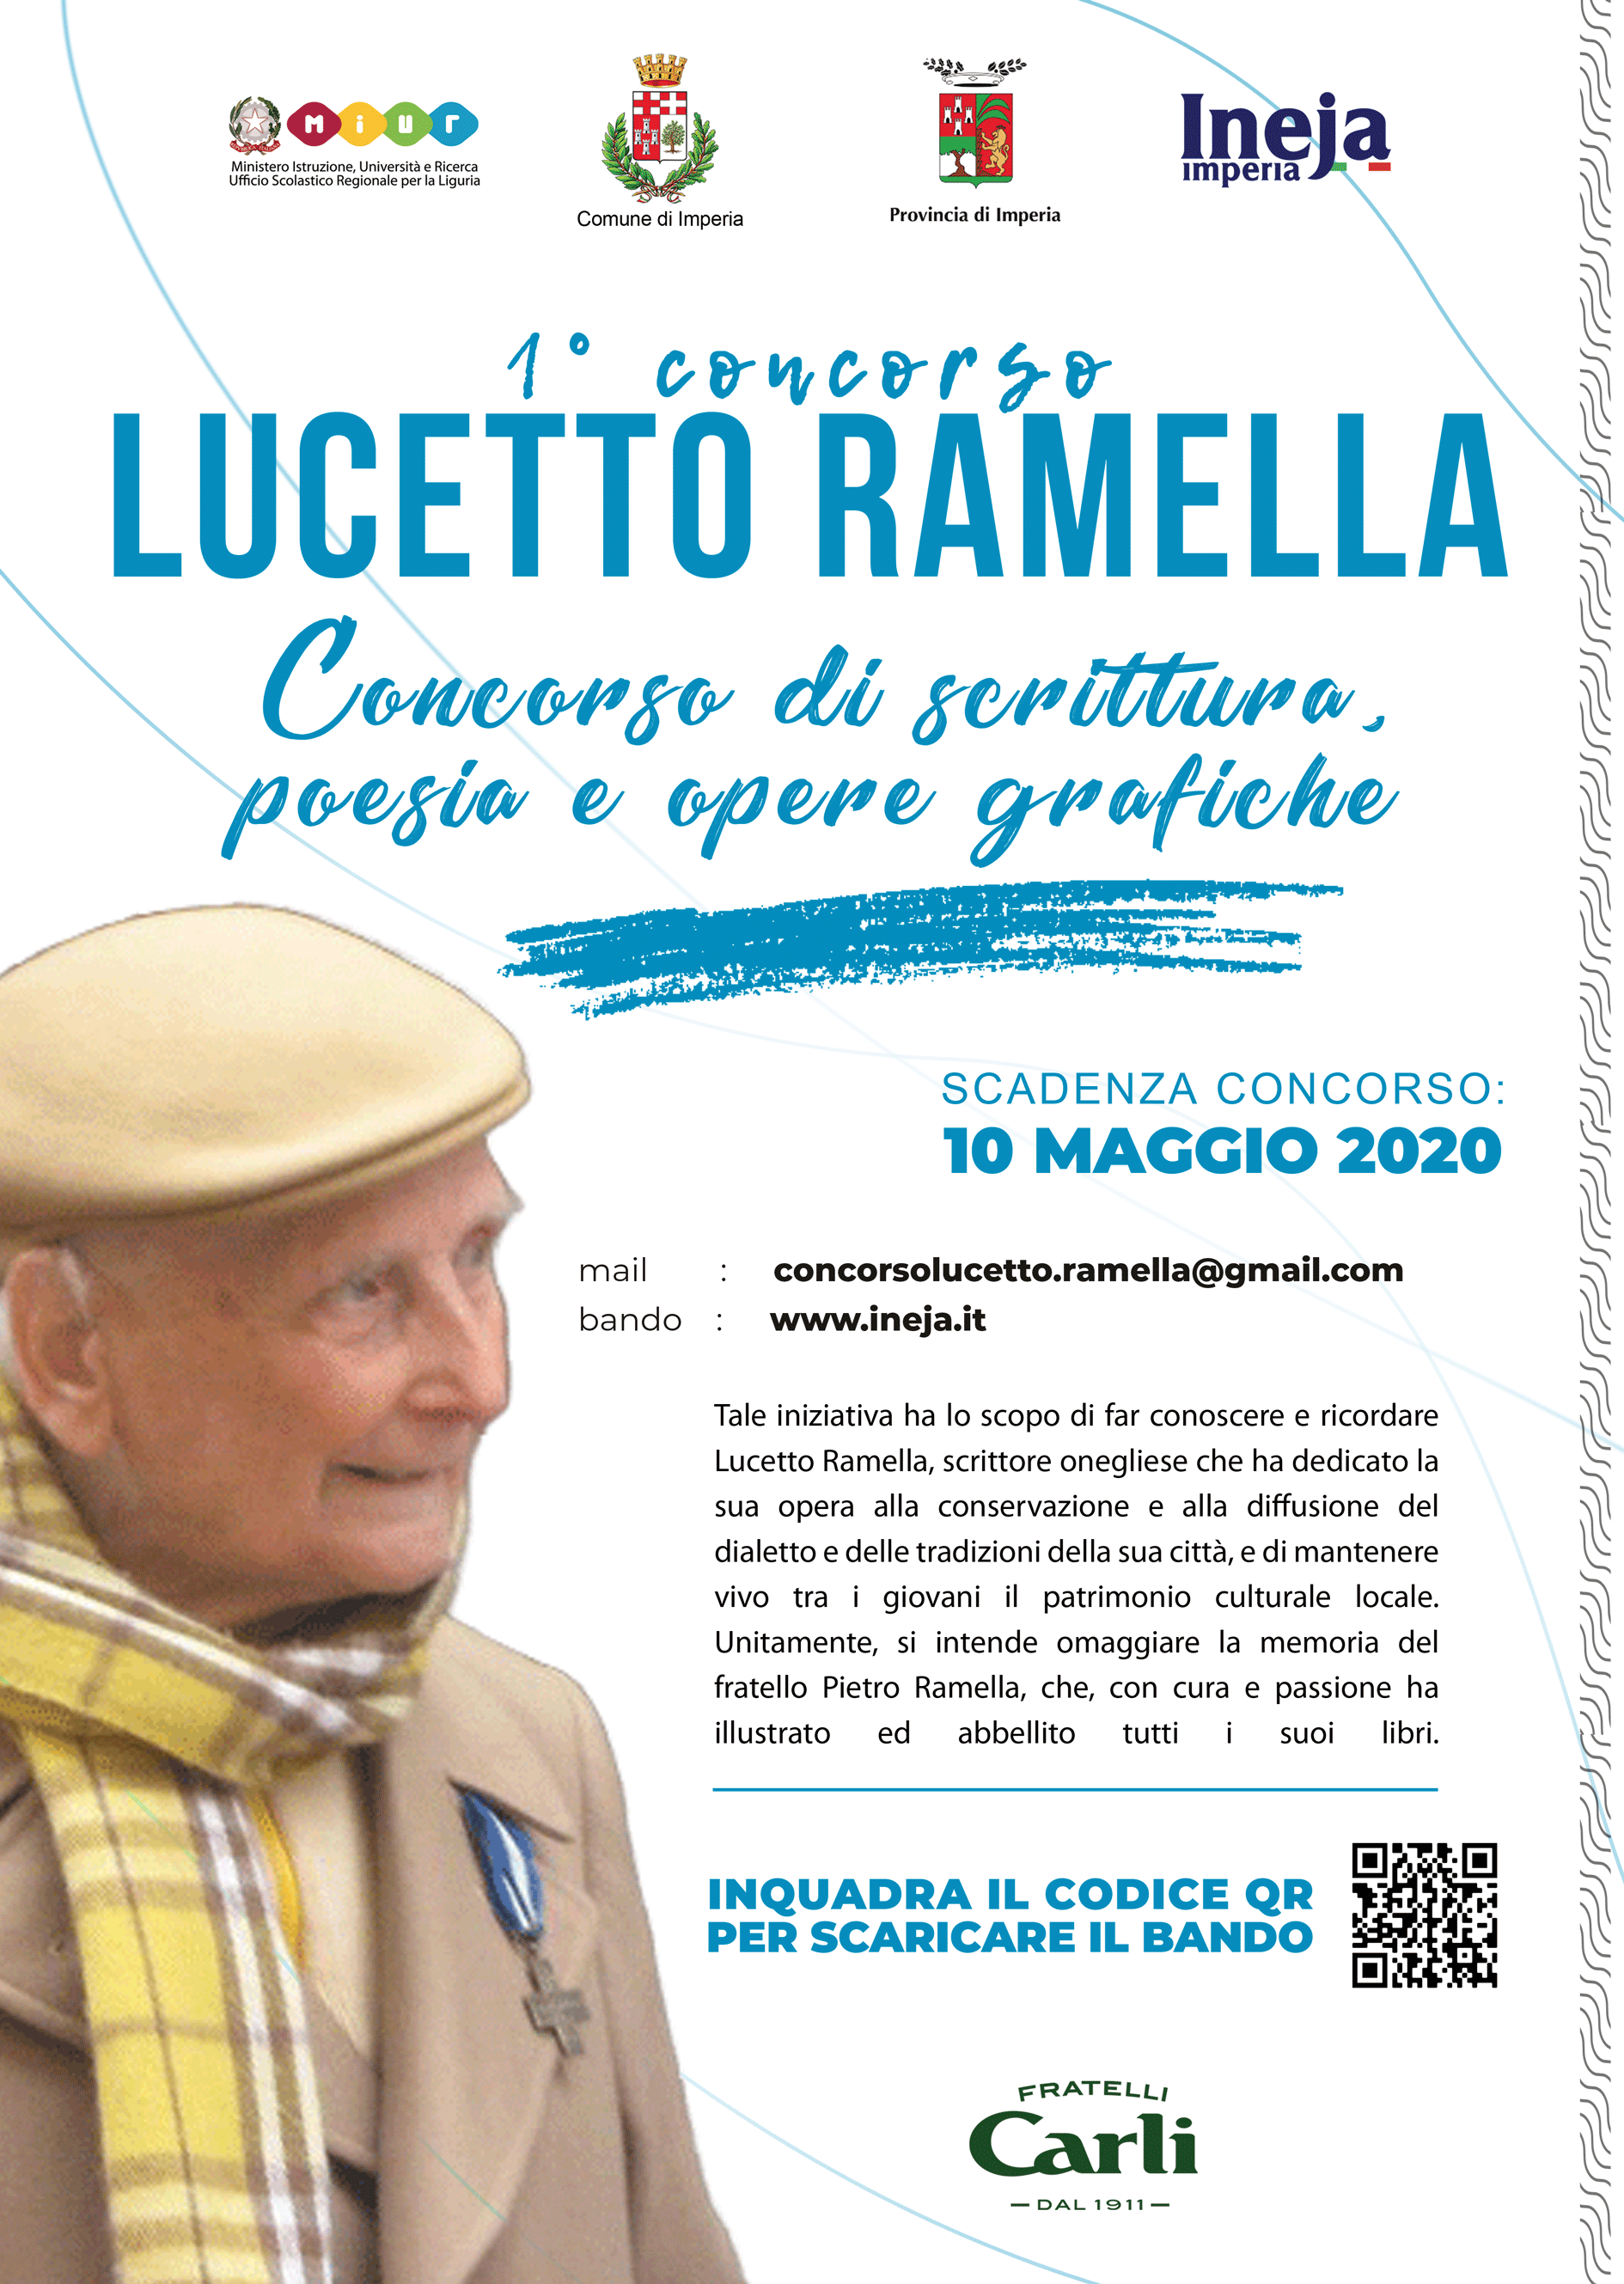 loc_lucetto_ramella_2020